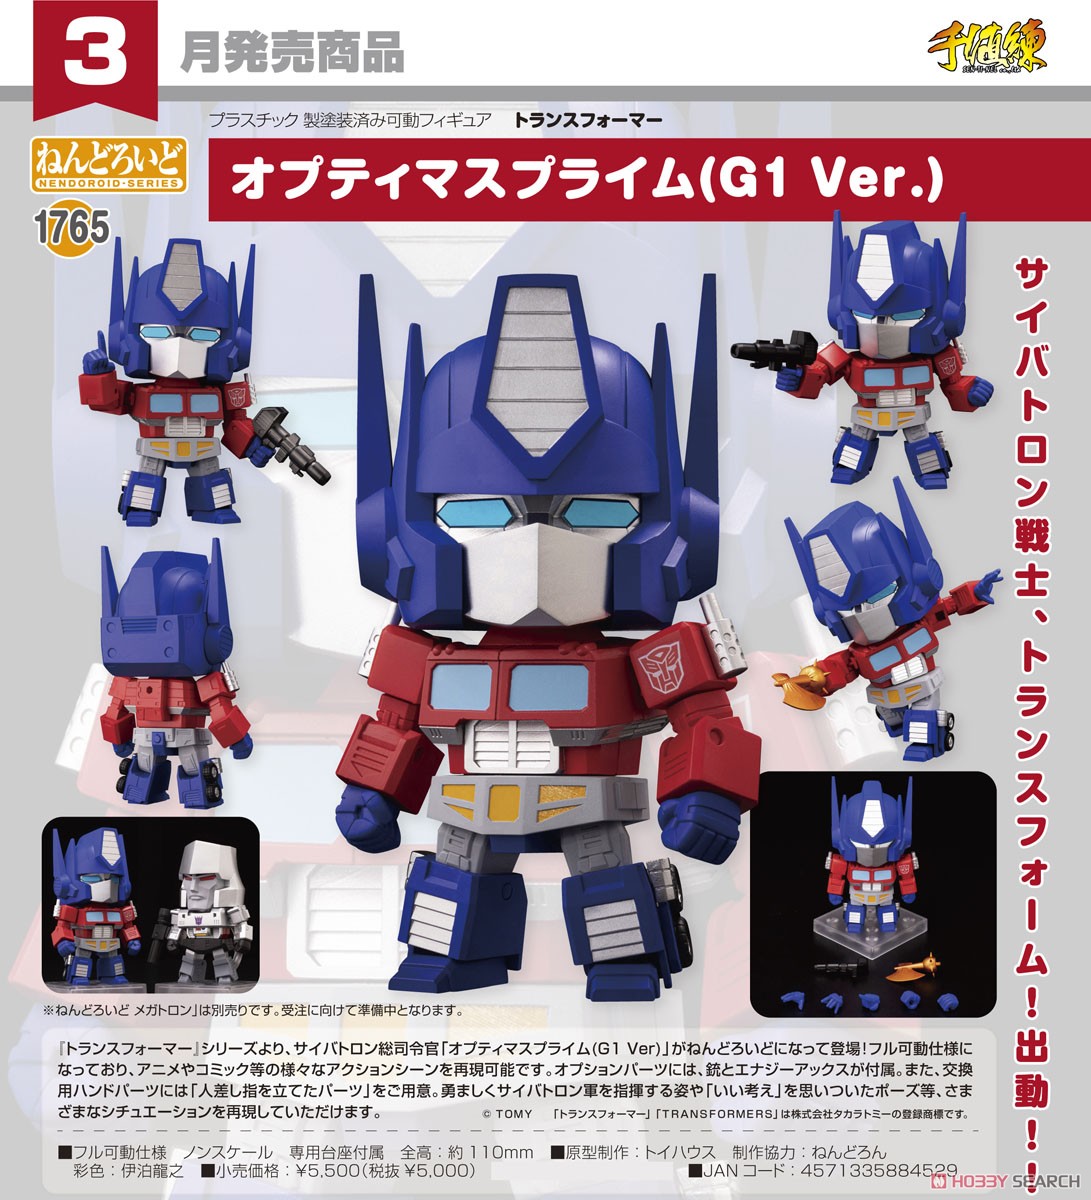 Nendoroid Transformers Optimus Prime (G1 Ver.)